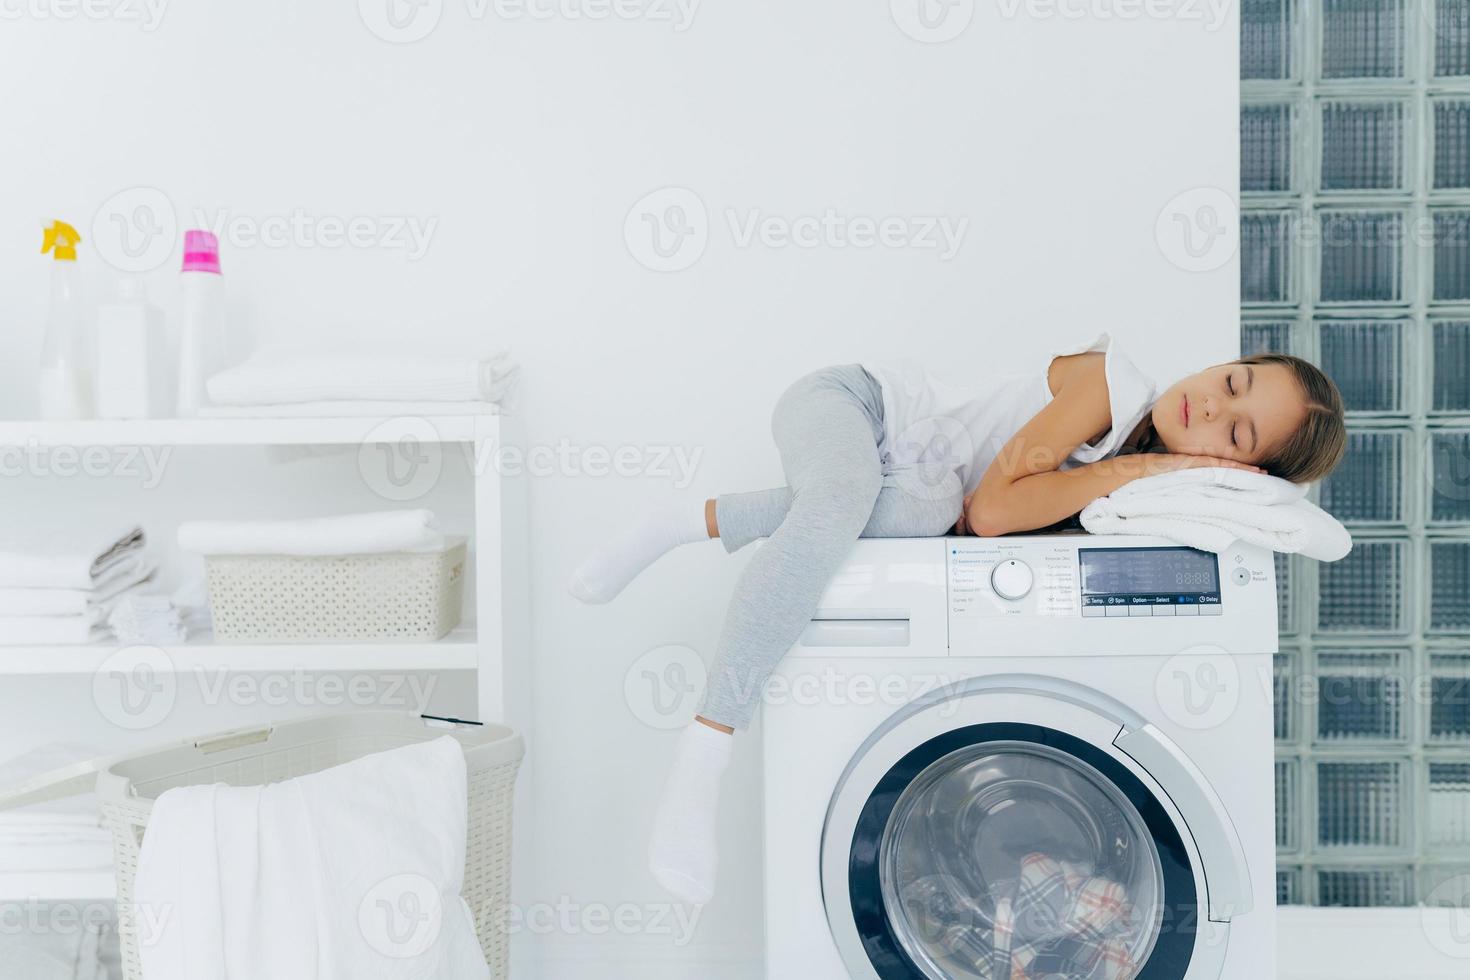 horizontaal schot van klein meisje rust op de wasmachine, voelt zich moe na het helpen van moeder over het huis, slaapt op wasmachinehoudingen in wasruimte met console, wasmiddelen, linnen rond. huishoudelijke routine foto